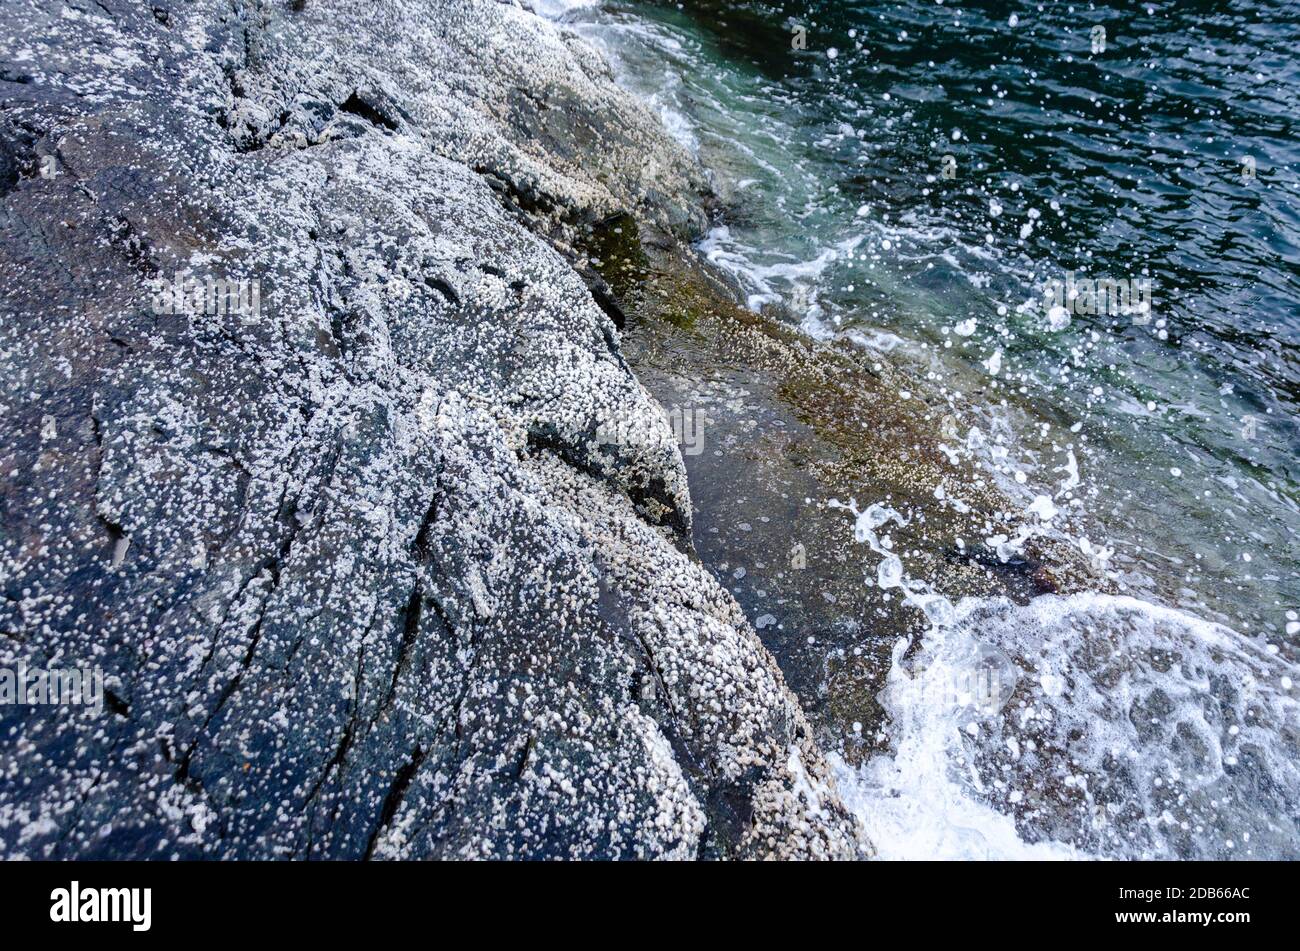 White Epilithic Crustose Lichen Growing on Seaside Rocks at Cabo de Rama, Canacona, Goa, India Stock Photo